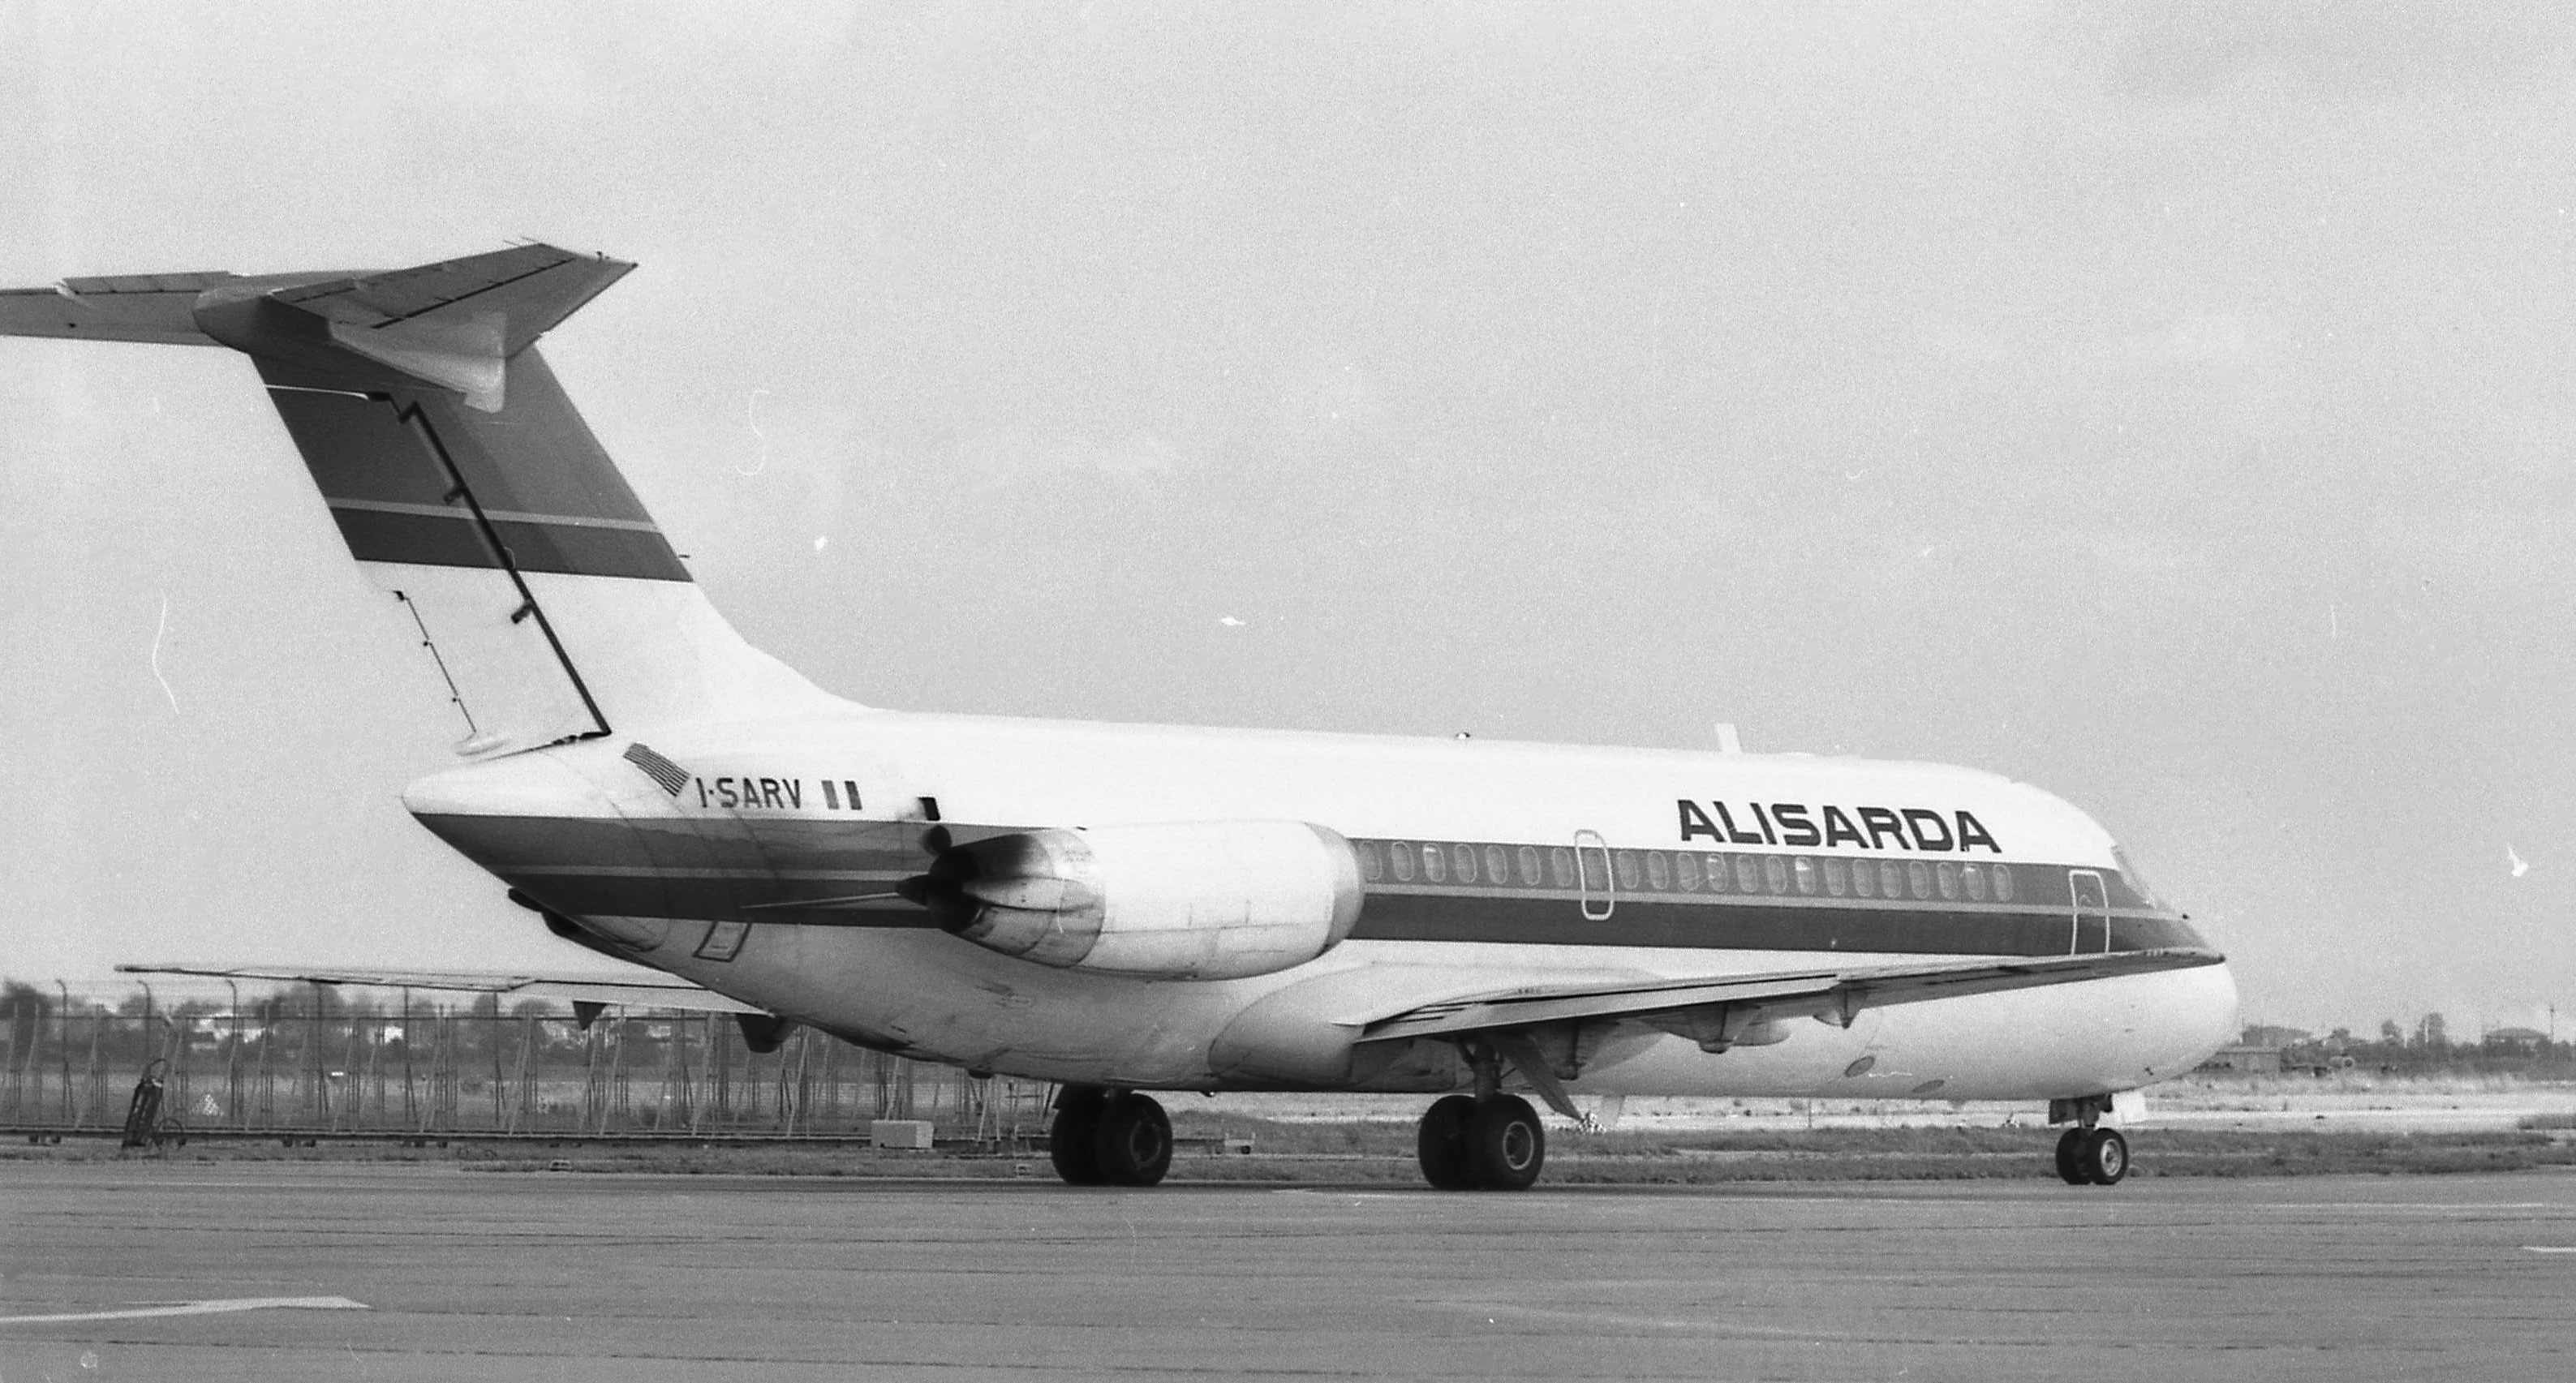 Alisarda DC-9 I-SARV 3N